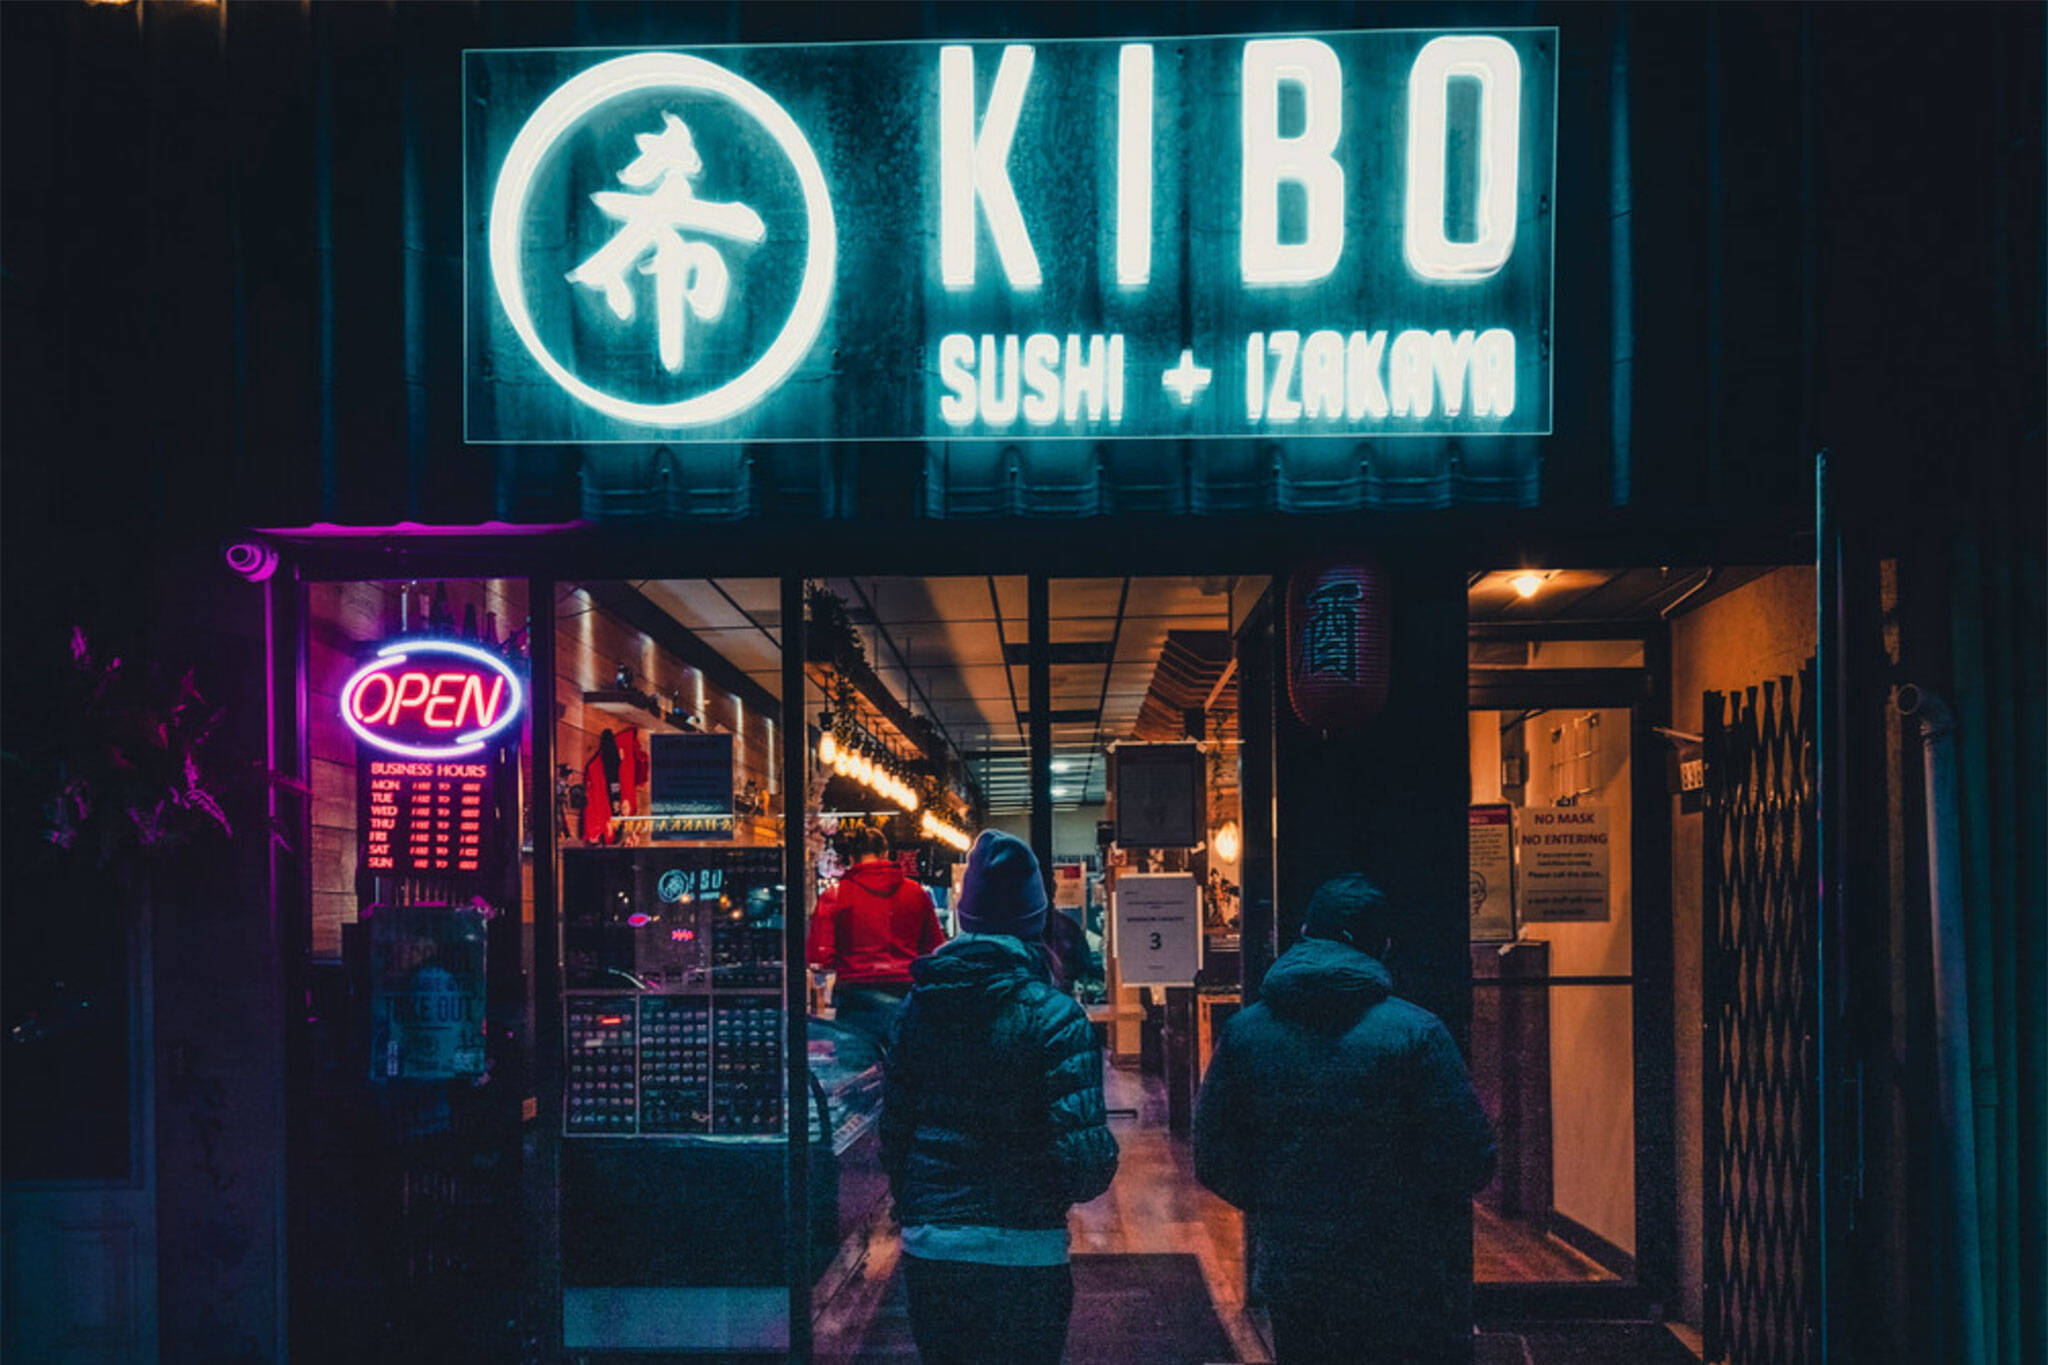 kibo sushi